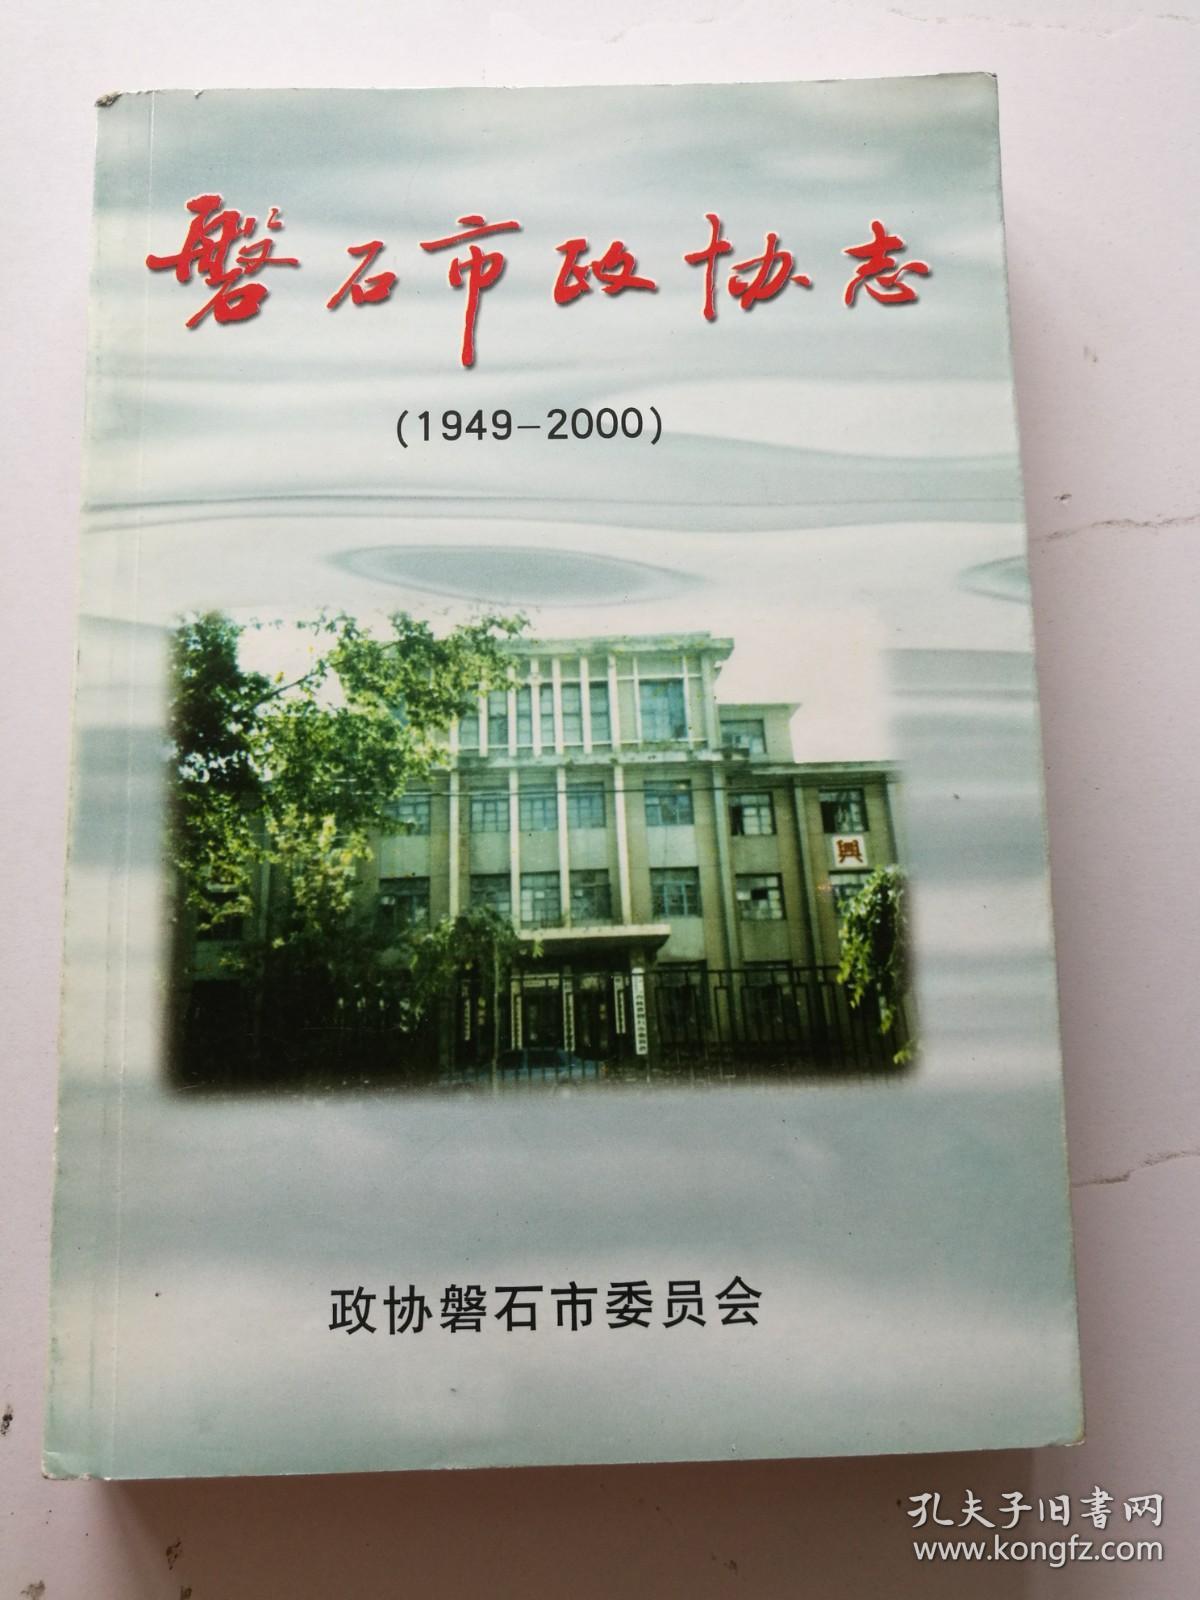 磐石市政协志 1949—2000 磐石文史资料第十辑